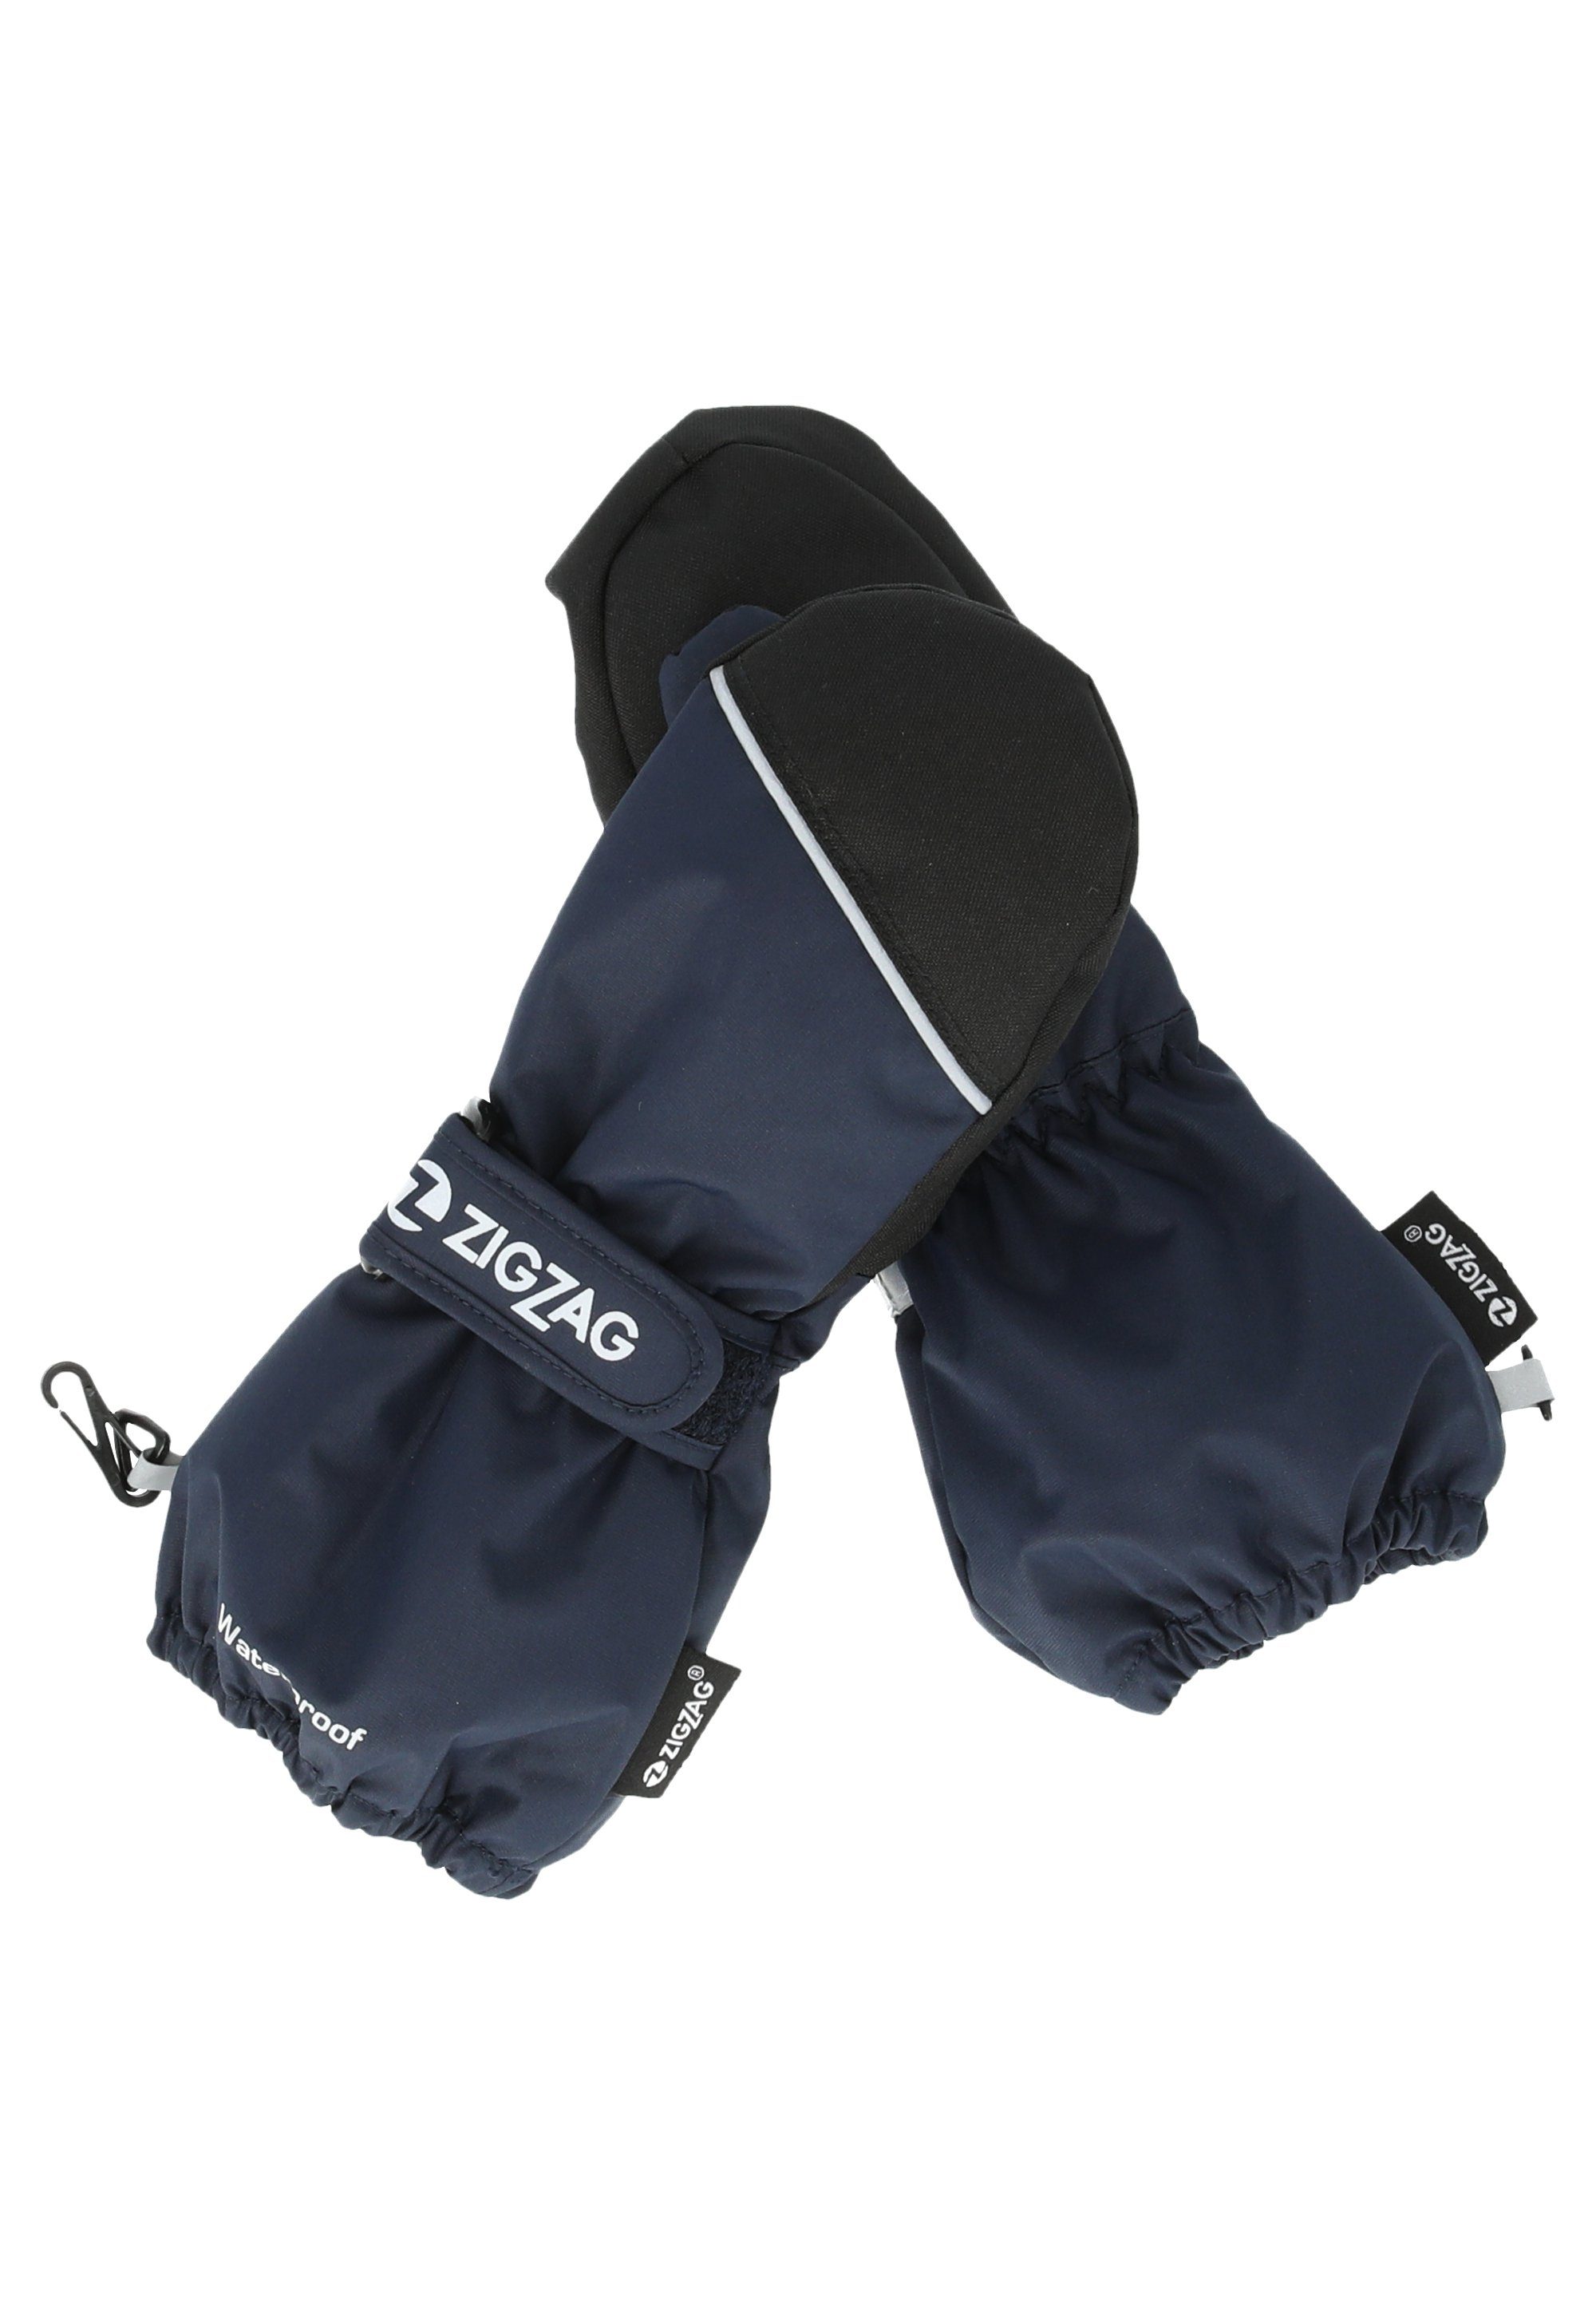 komfortabler mit ZIGZAG Wintersport-Ausstattung Skihandschuhe dunkelblau Kempston